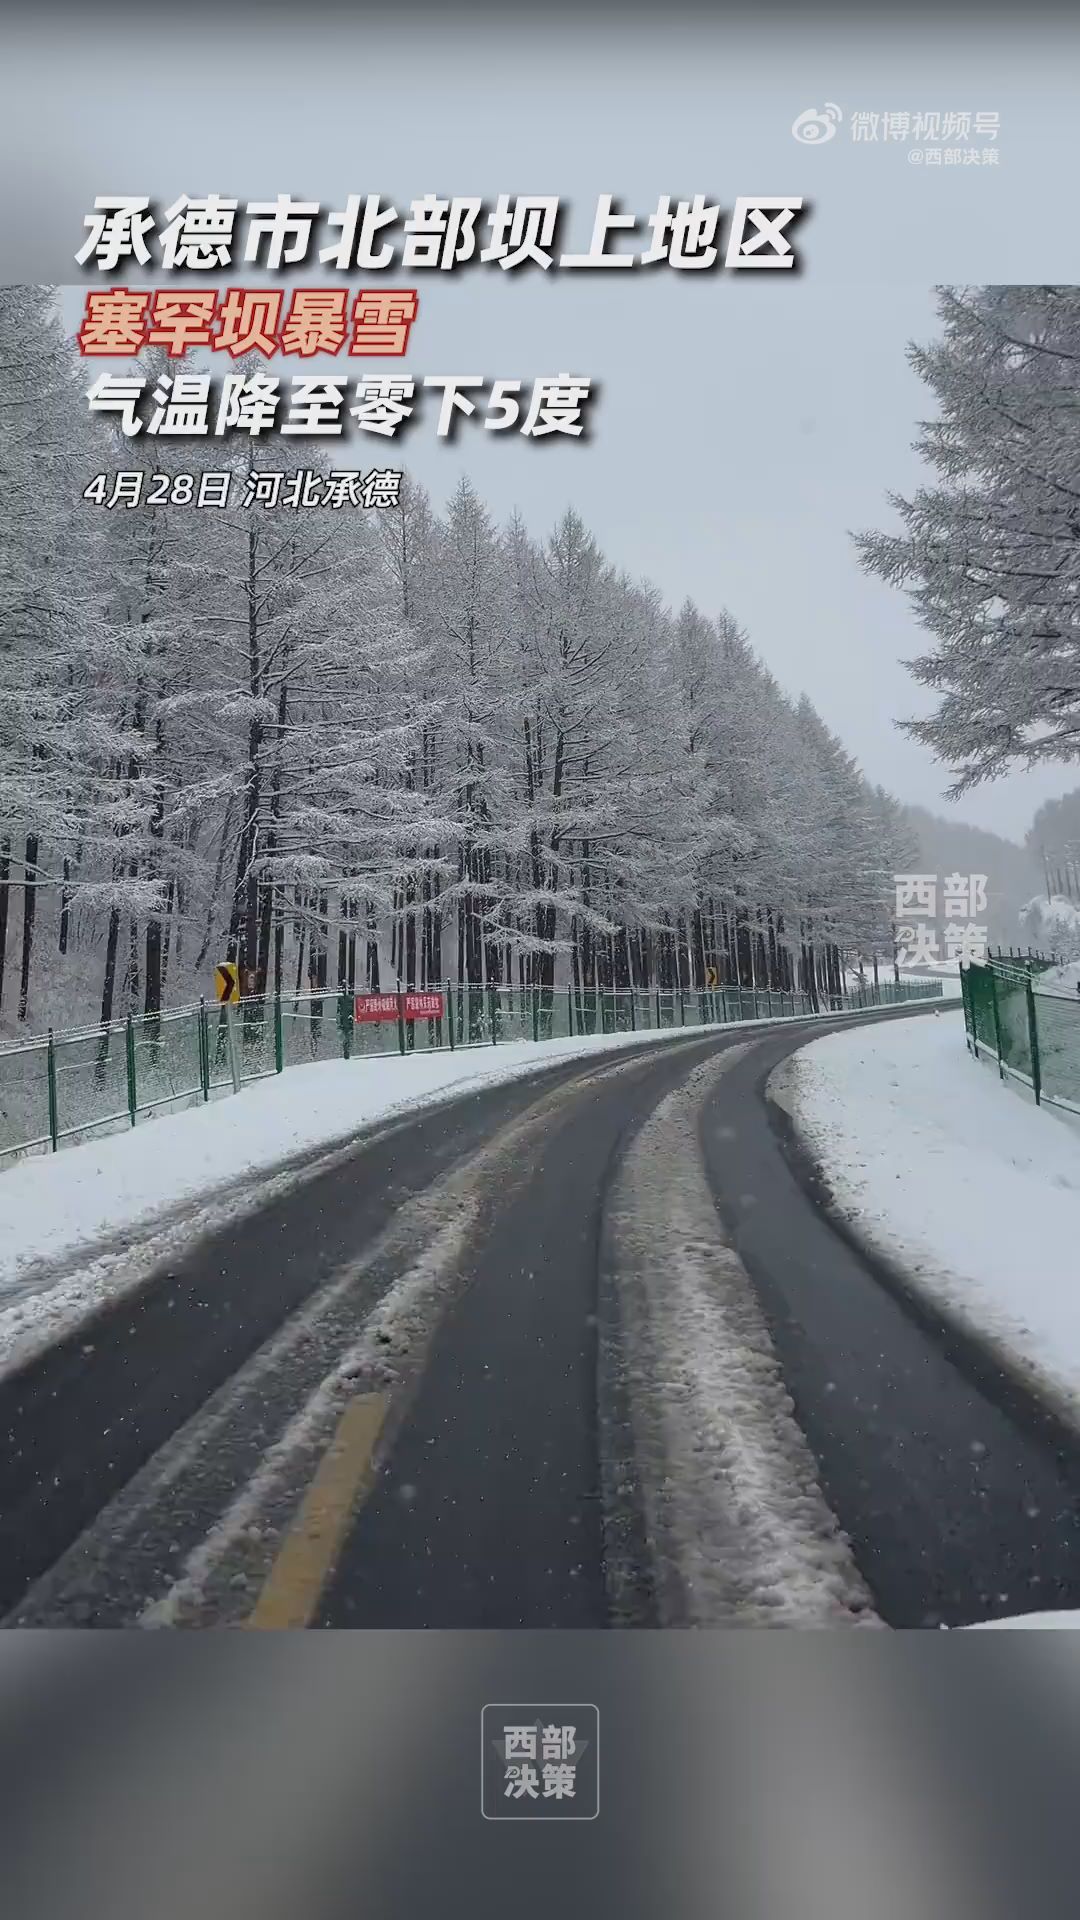 河北塞罕坝暴雪